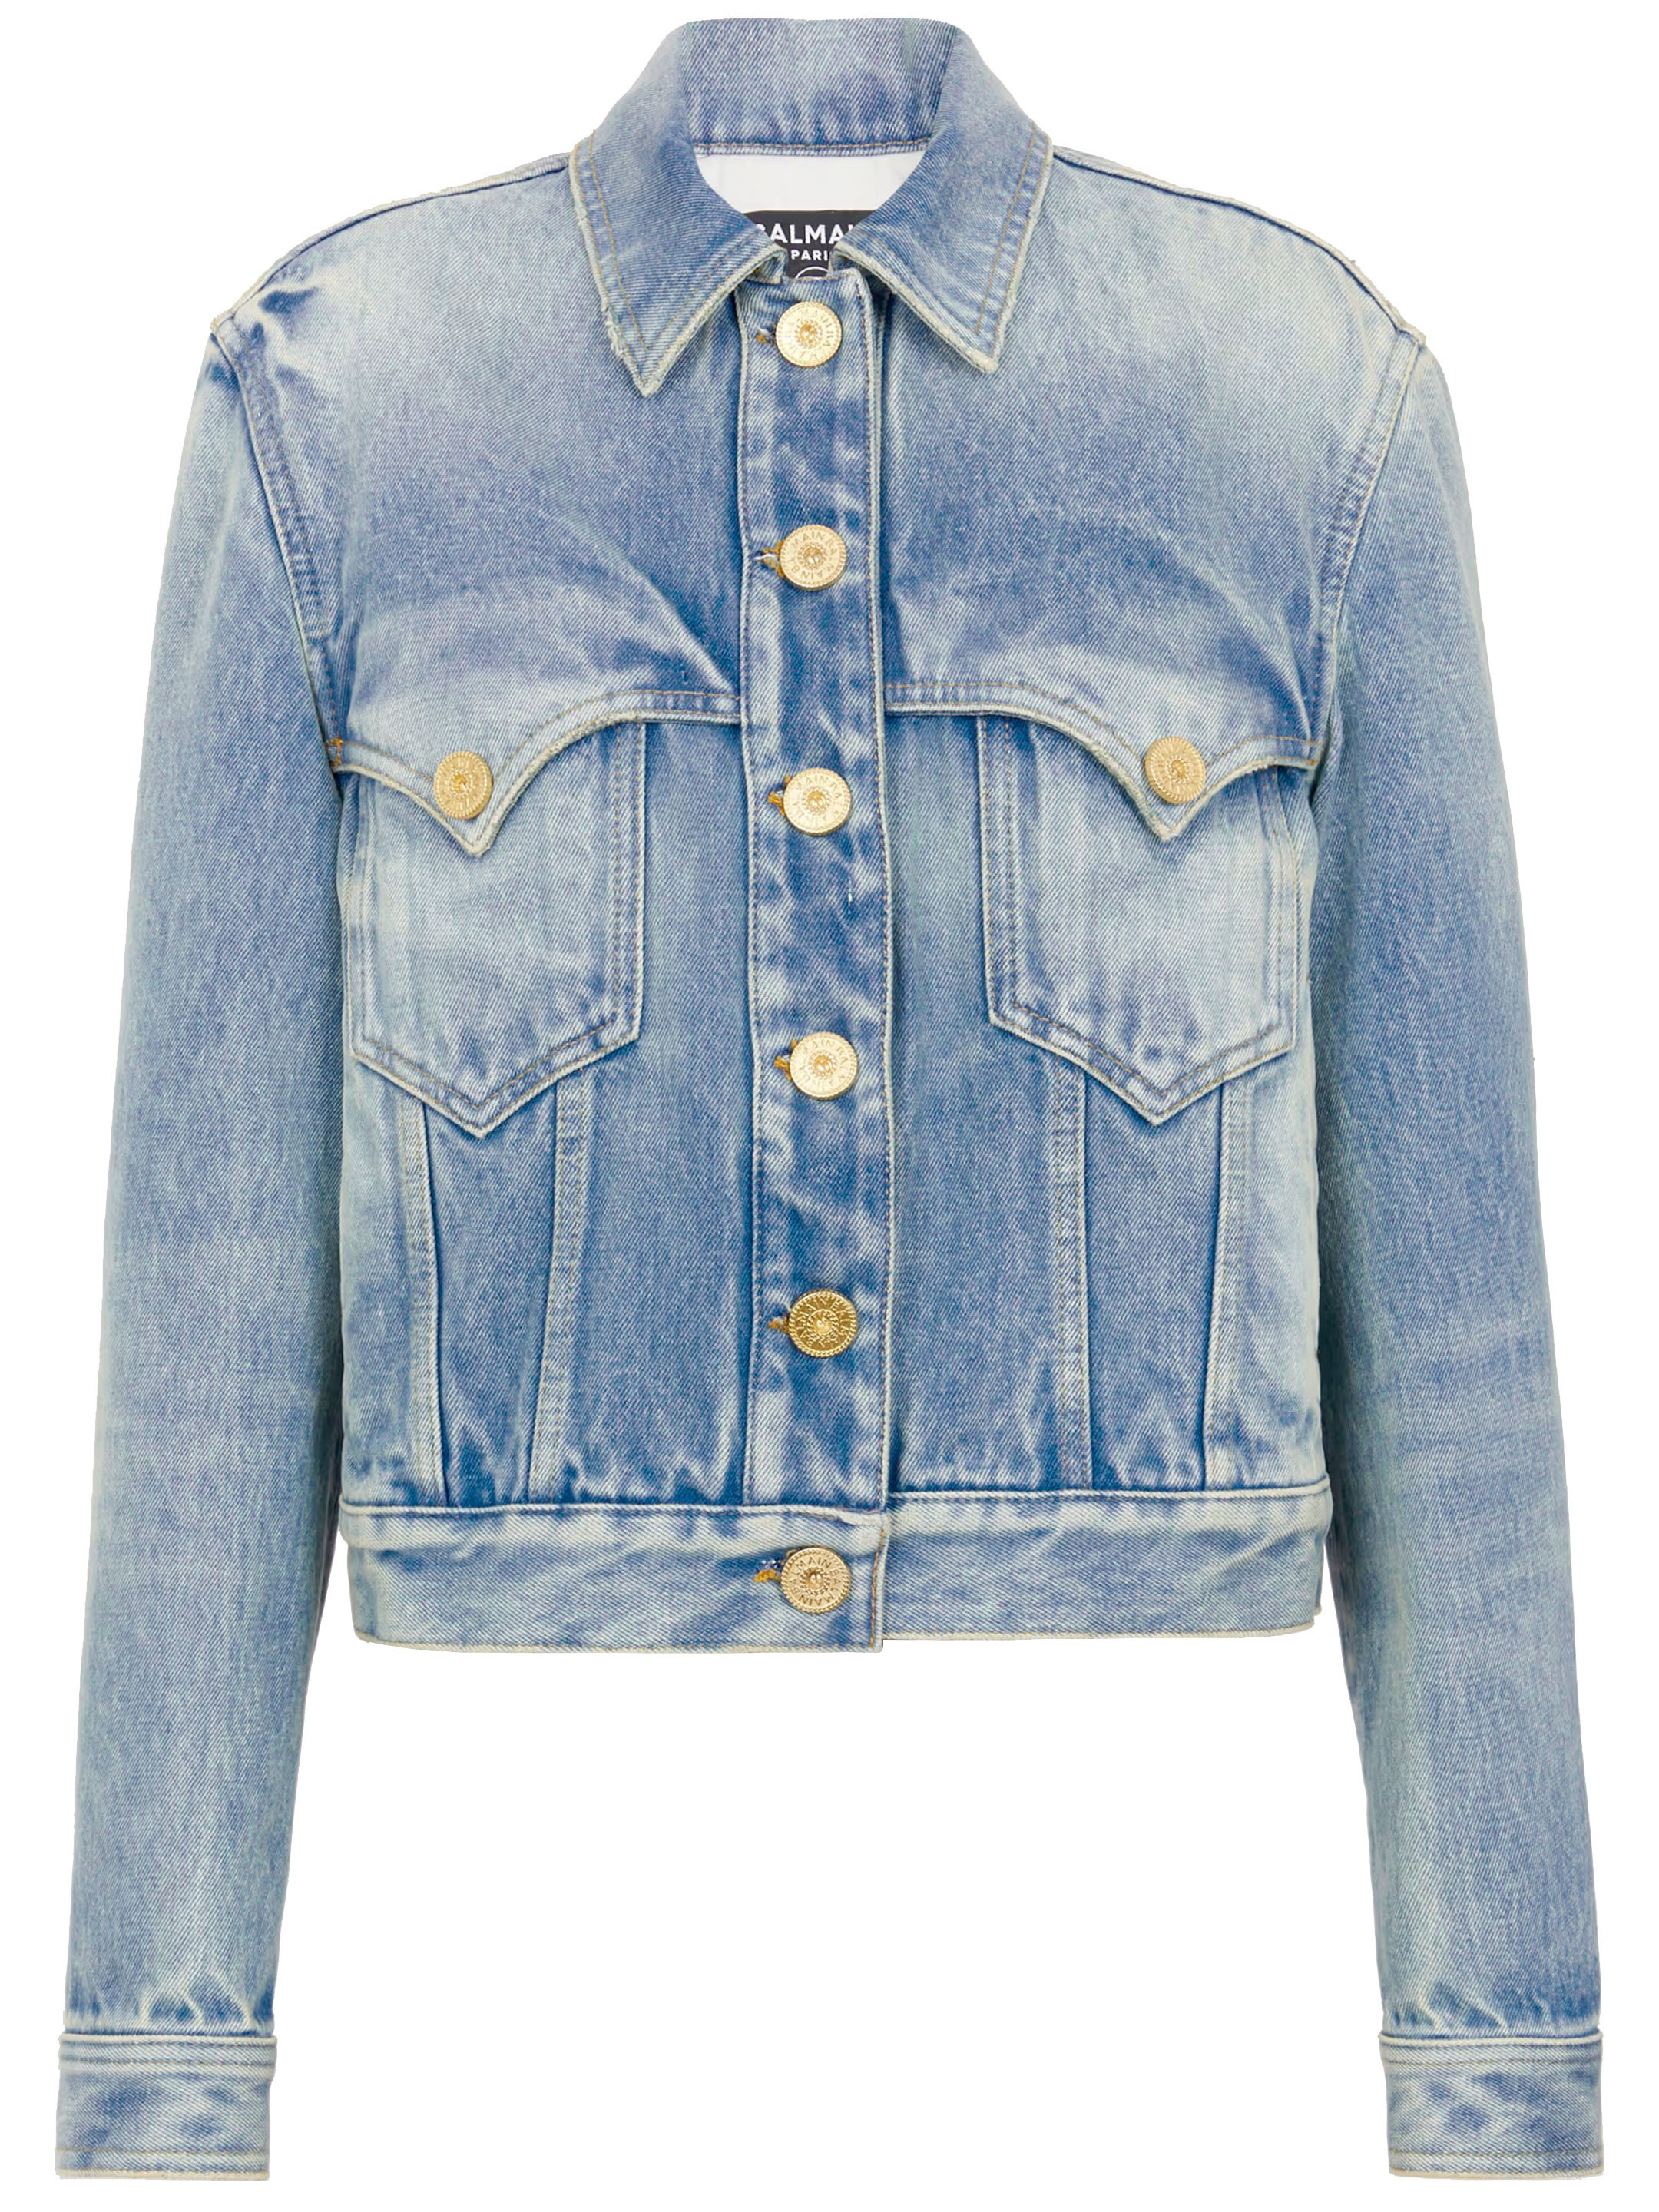 Куртка Balmain Vintage denim, синий синяя джинсовая мини юбка в стиле вестерн balmain